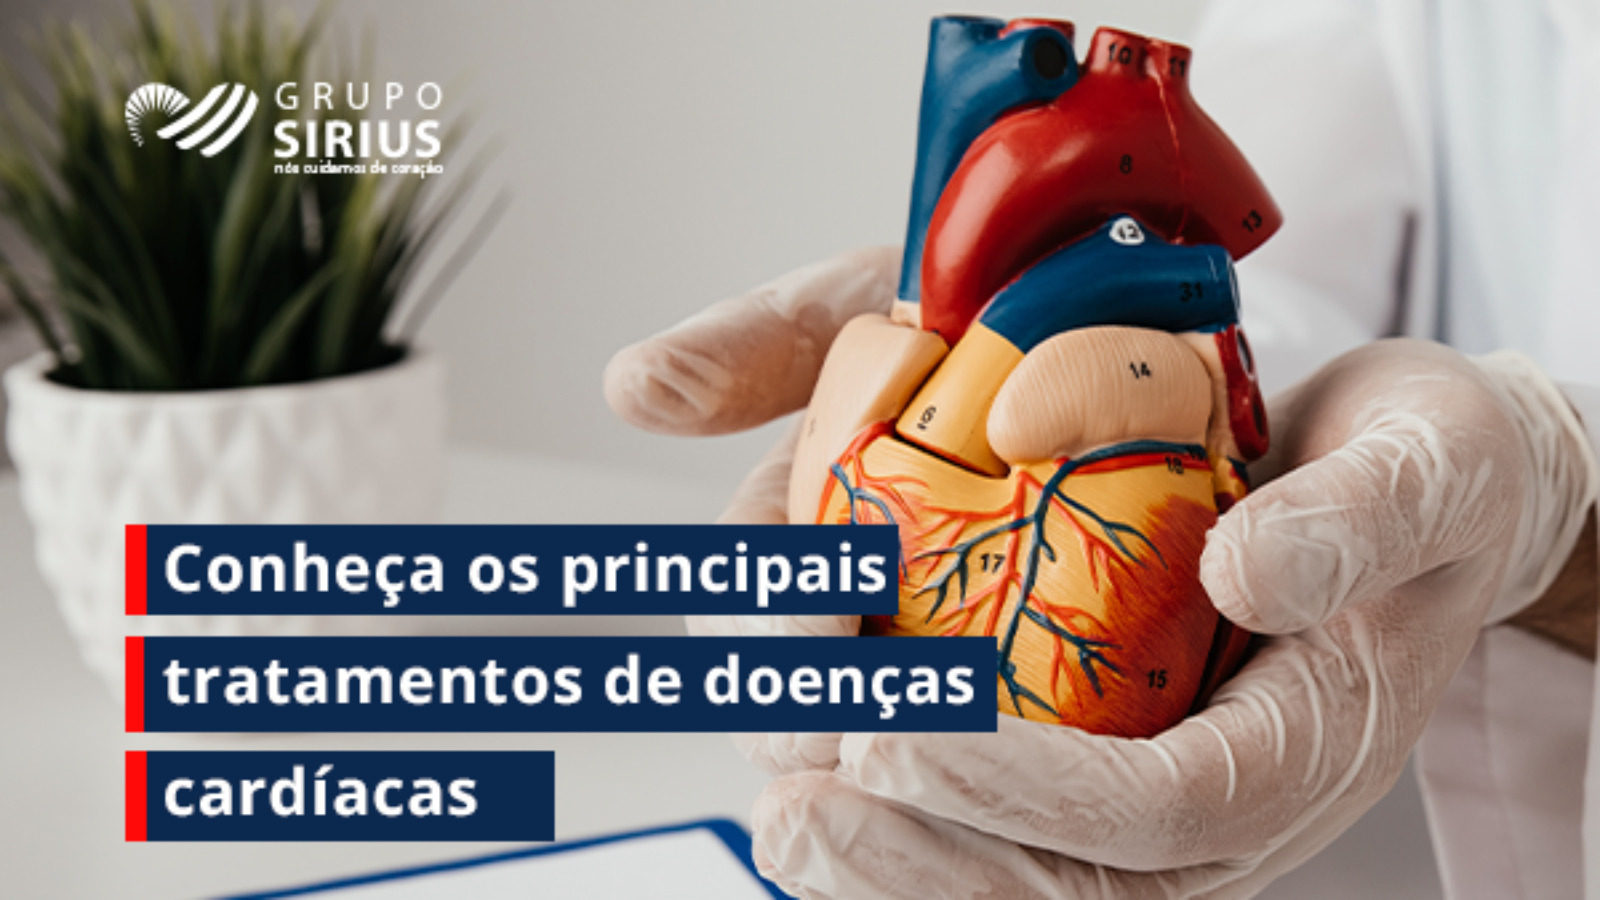 Grupo Sirius-09-Conheça os principais tratamentos de doenças cardíacas (1)